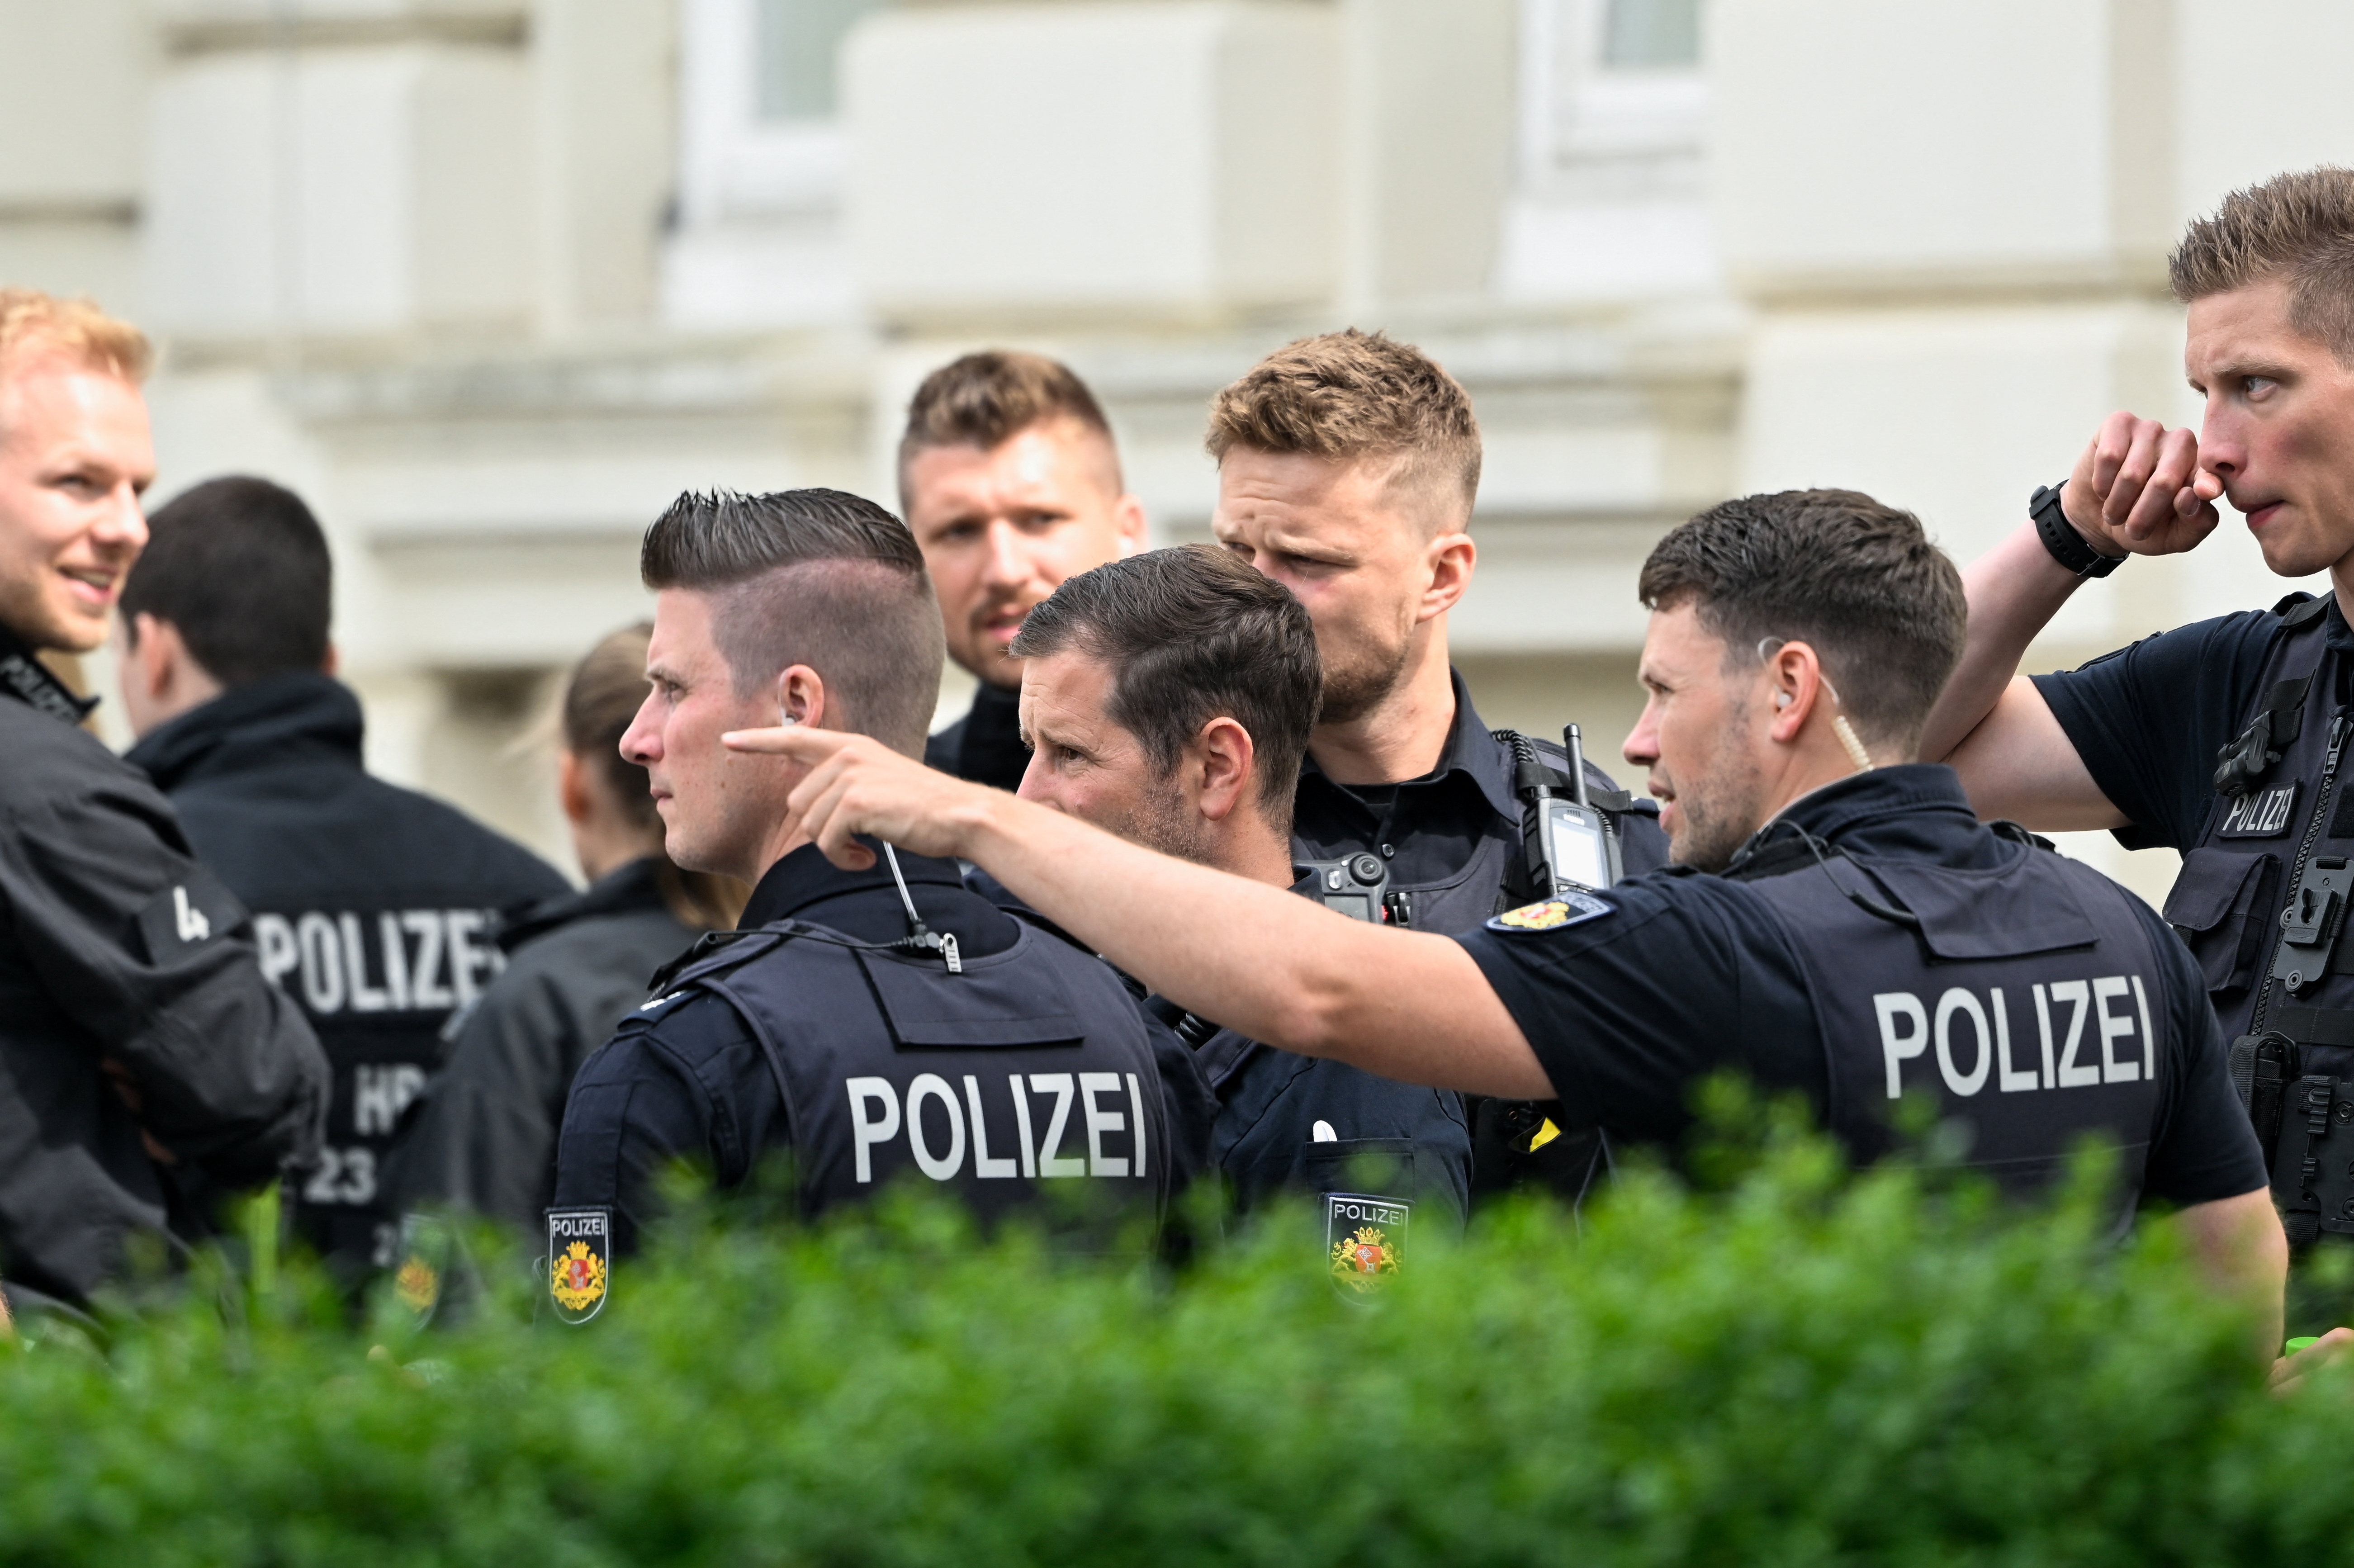 La policía de Alemania arrestó a varias personas porque un empleado de una escuela vio a un joven con un arma